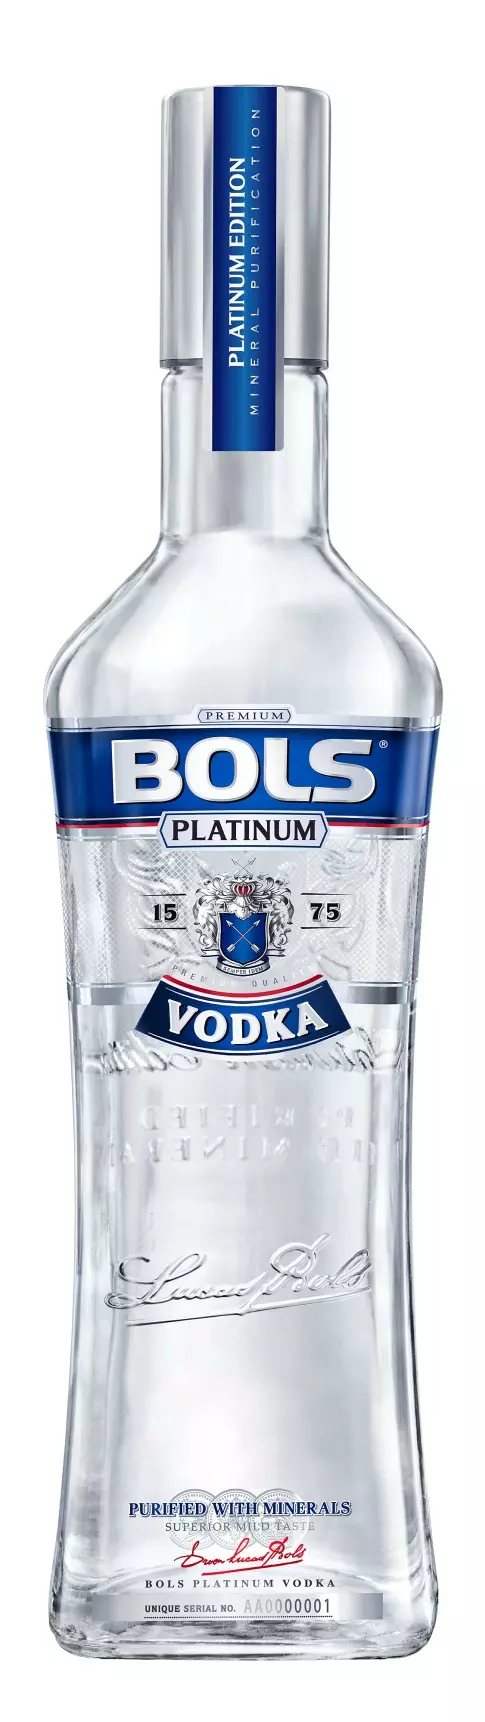 Bols Platinum vodka (1L / 40%)